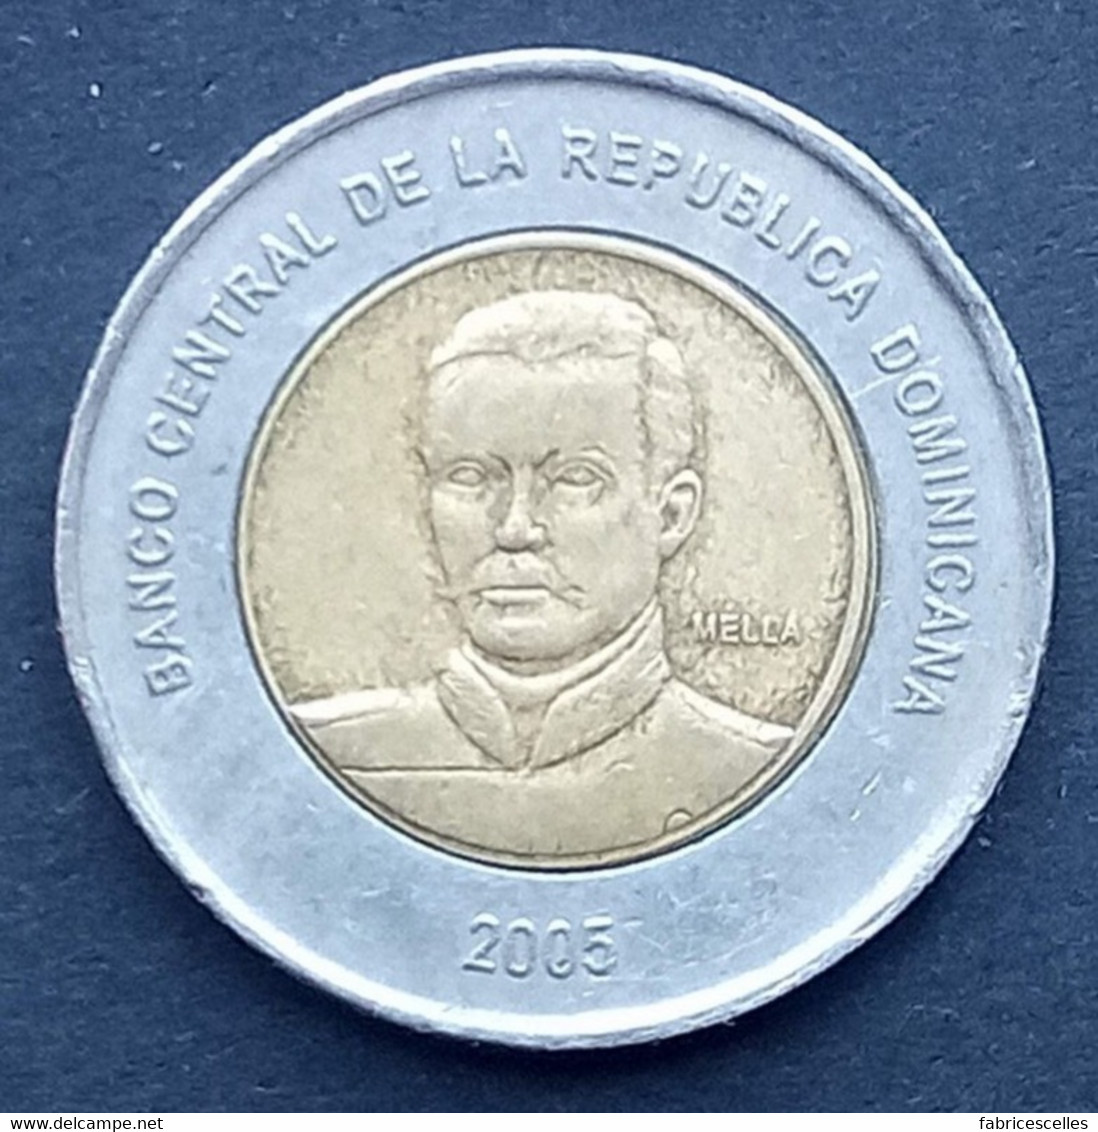 République Dominicaine - 10 Pesos 2005 - Dominicaanse Republiek